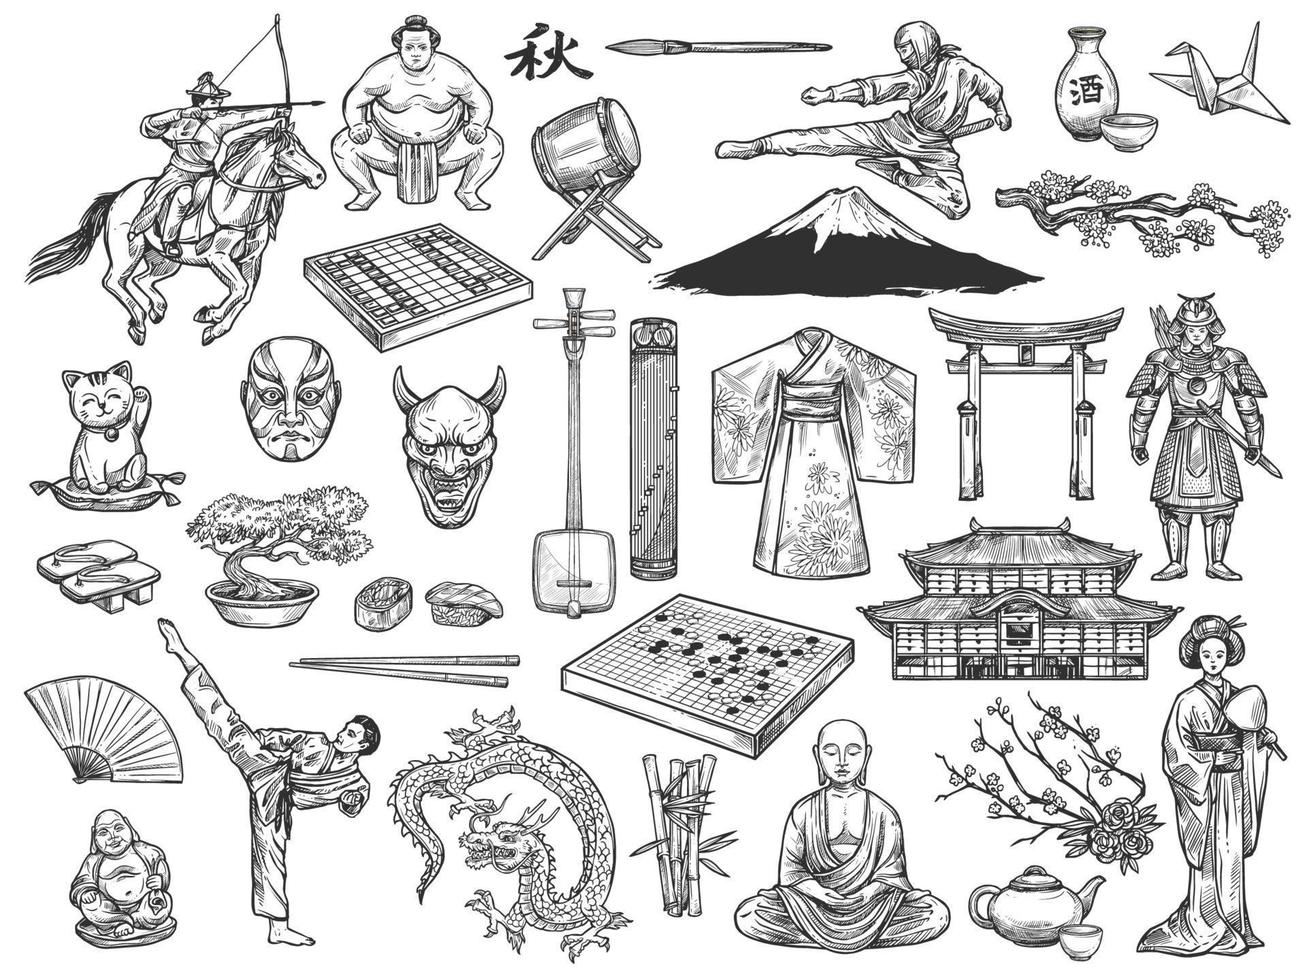 japanische kultursymbole, geschichtstraditionsskizze vektor